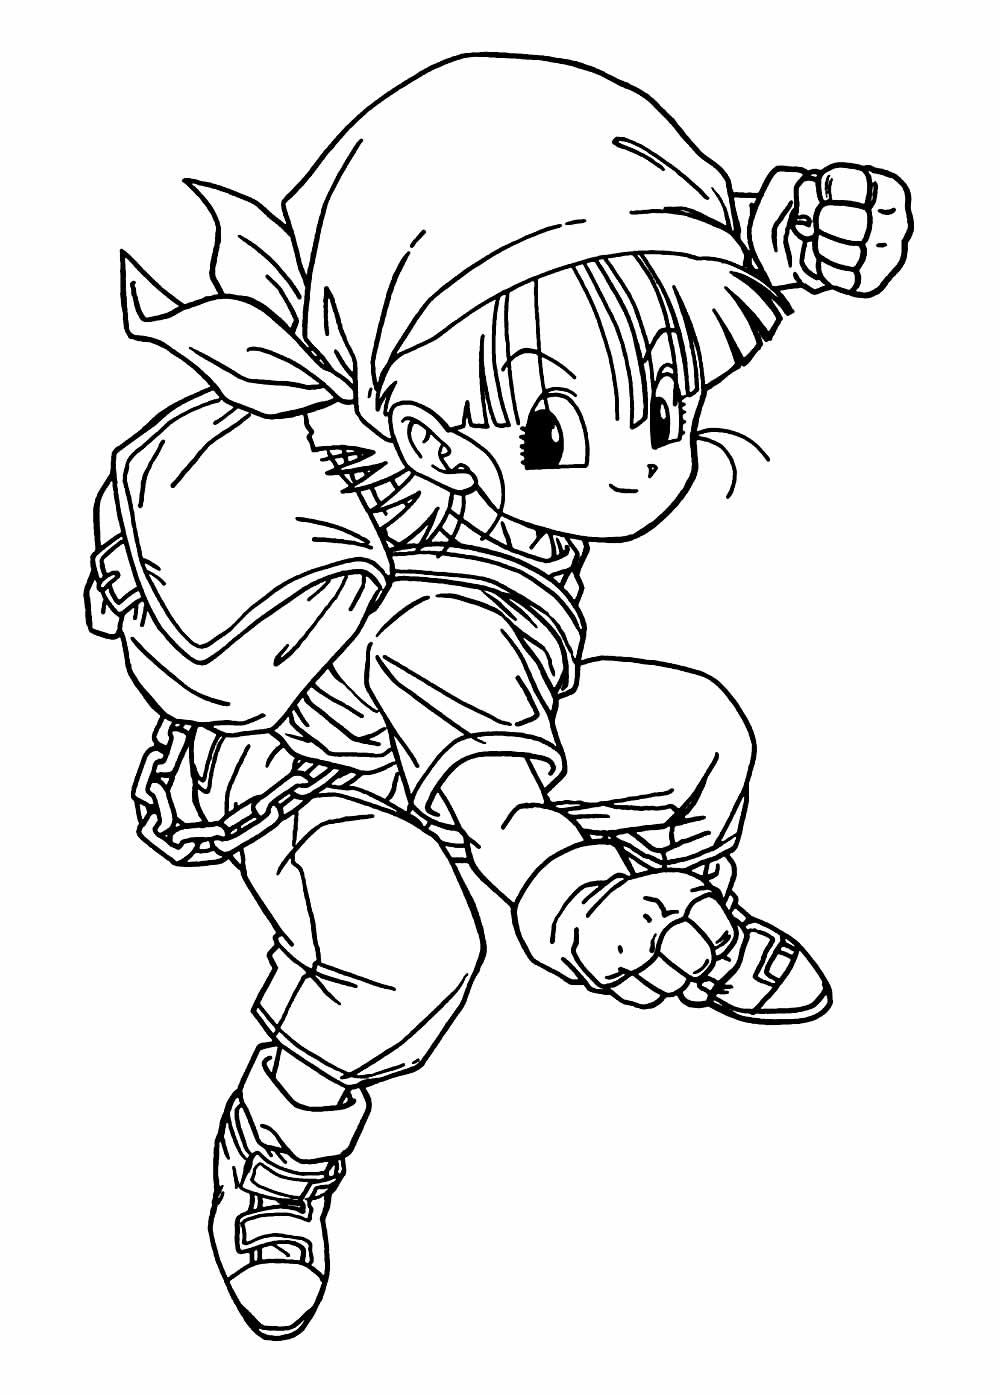 Desenho Dragon Ball Z para colorir